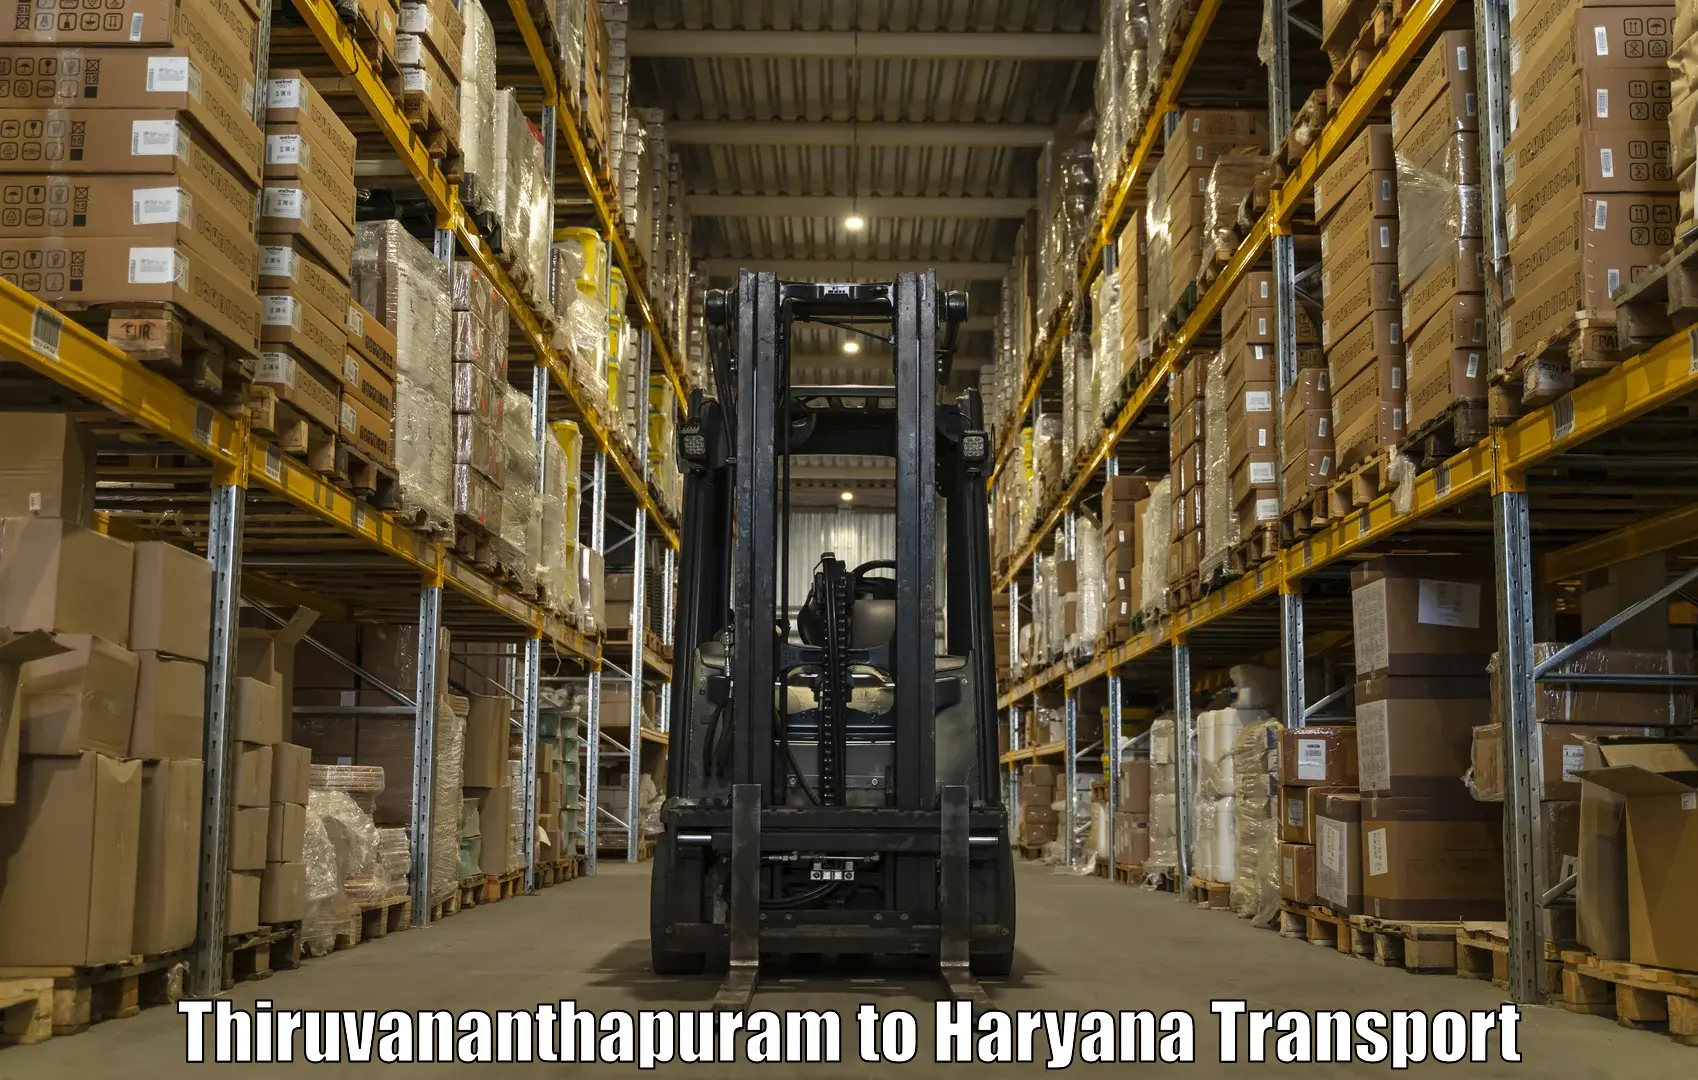 Sending bike to another city Thiruvananthapuram to Narwana